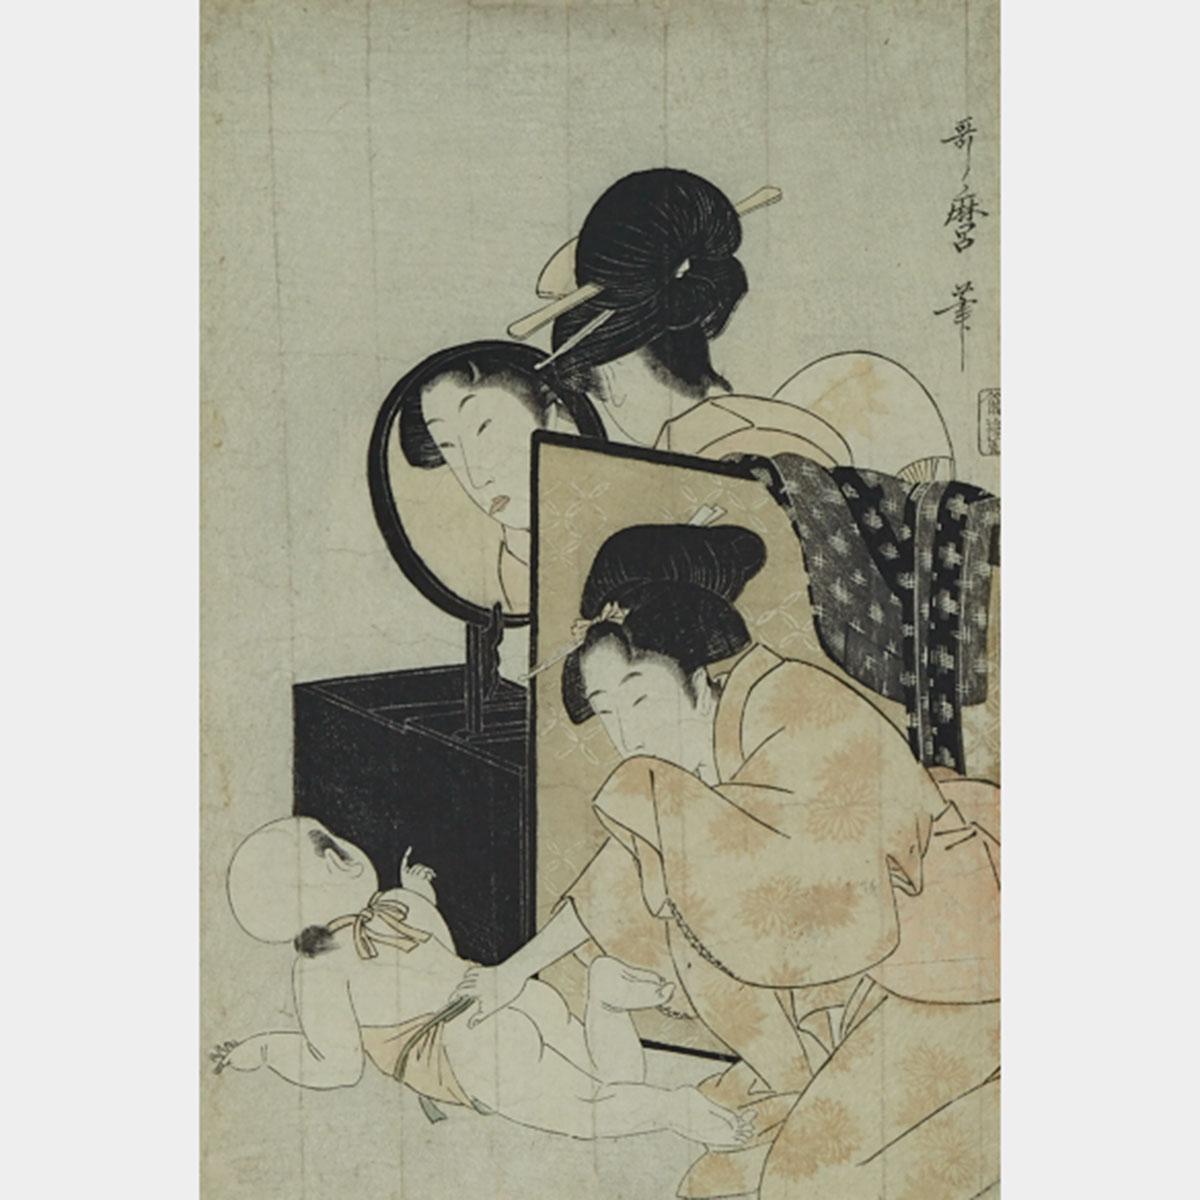 Utamaro (1753-1806)